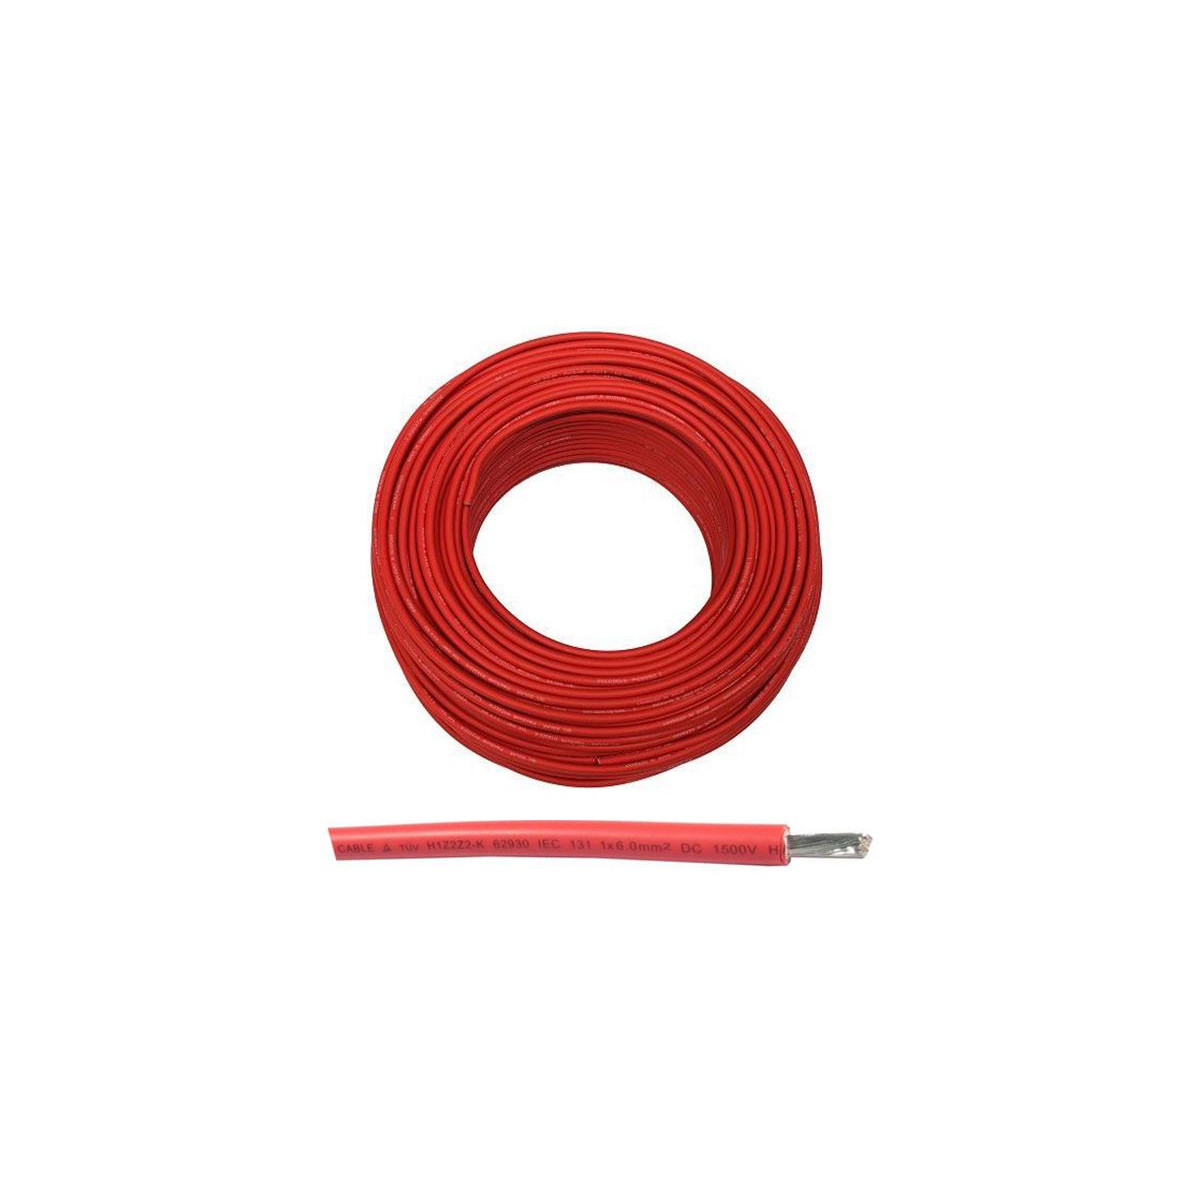 More about Solární kabel 10mm2, 1500V, červený, 100m